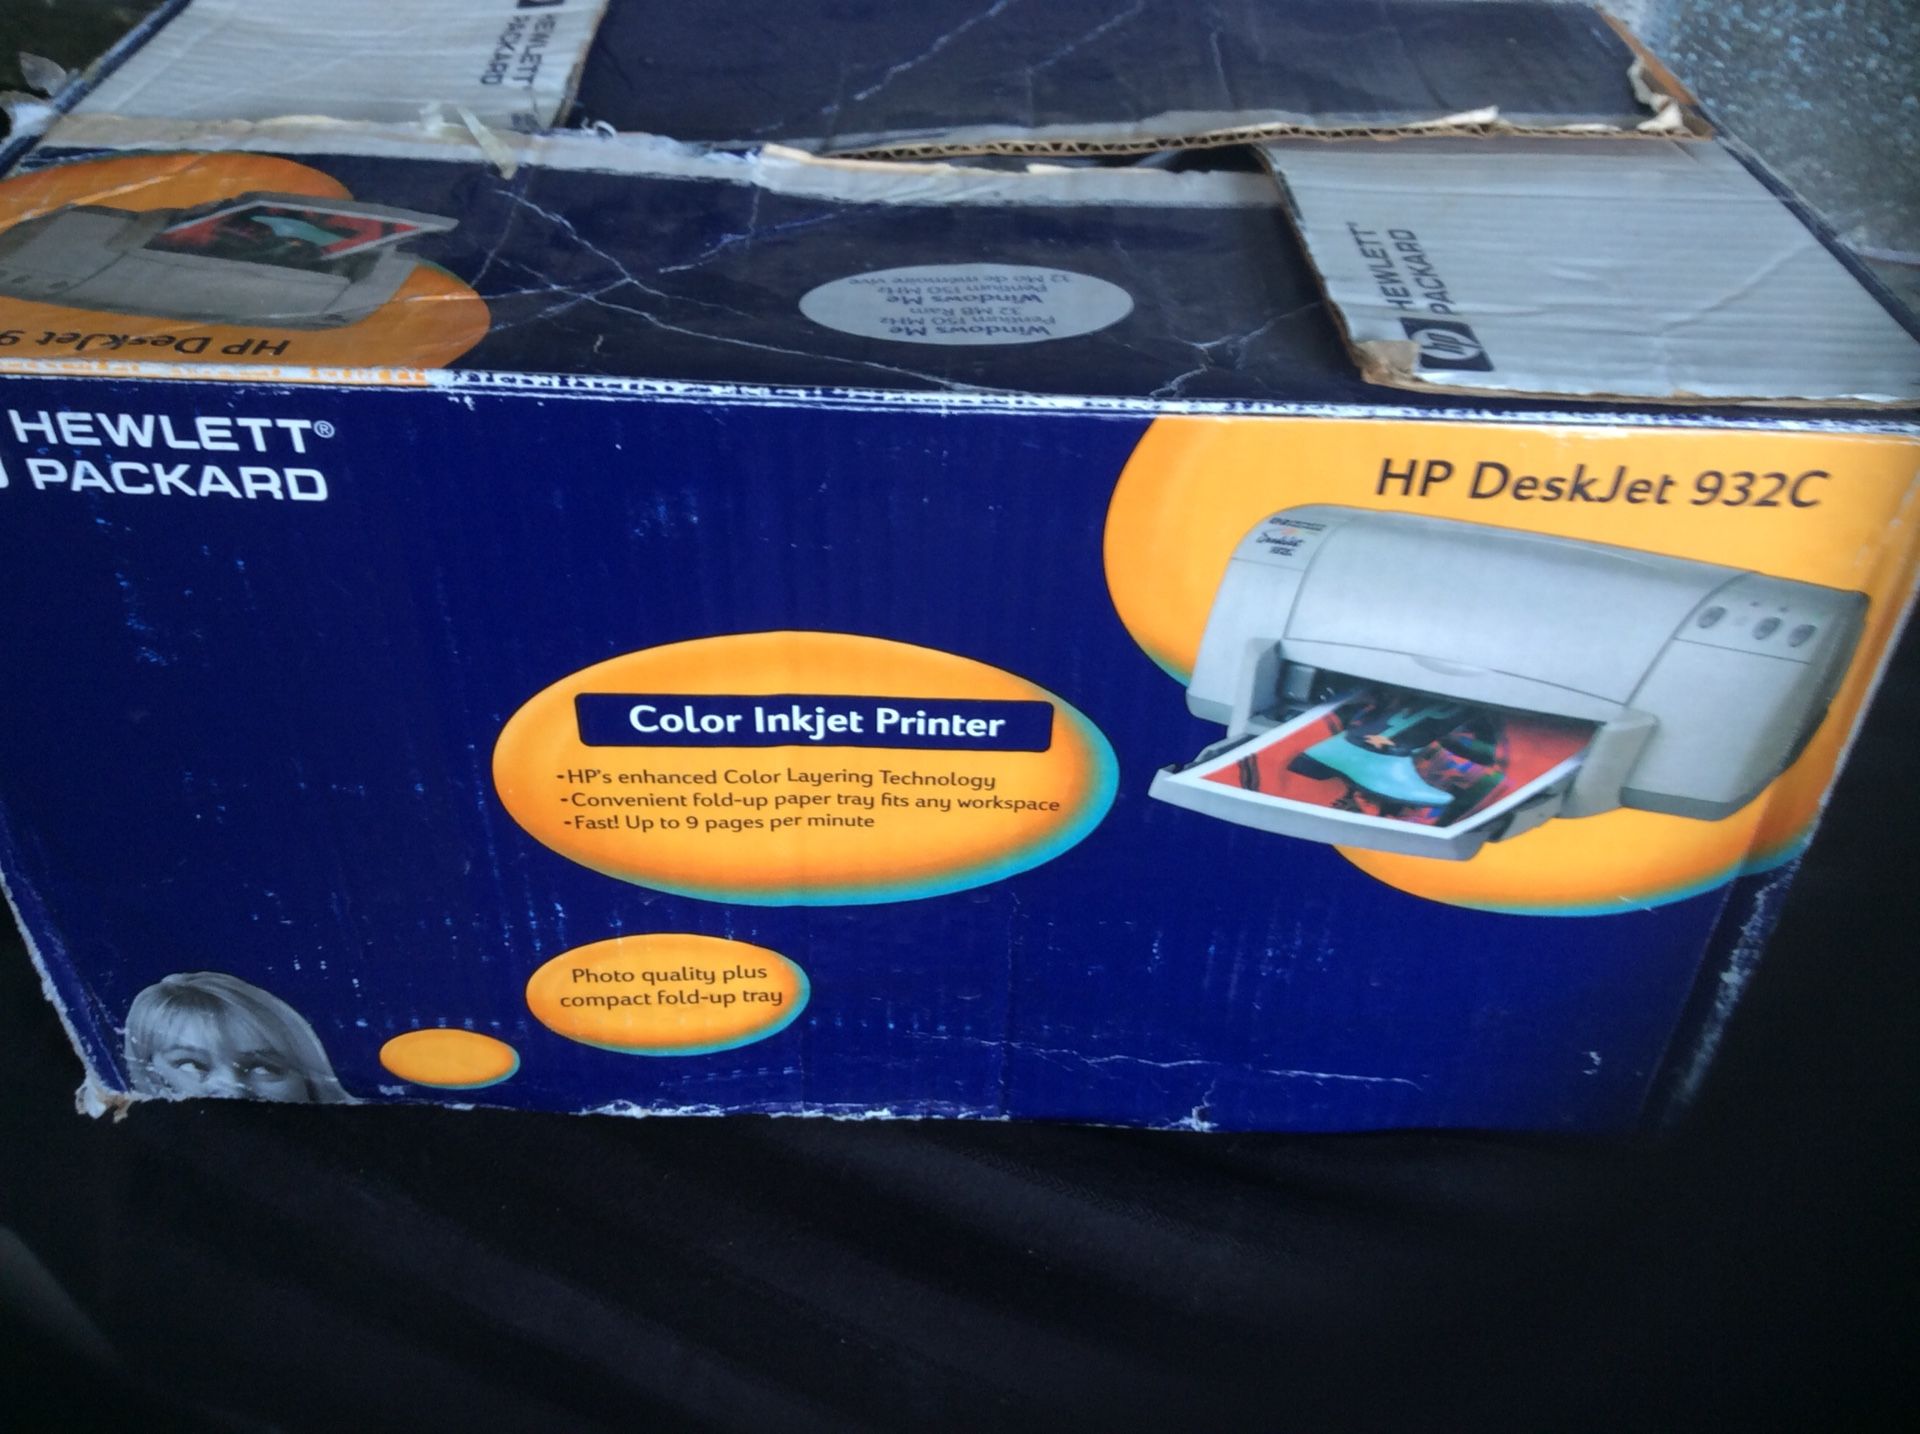 Hewlett-Packard printer